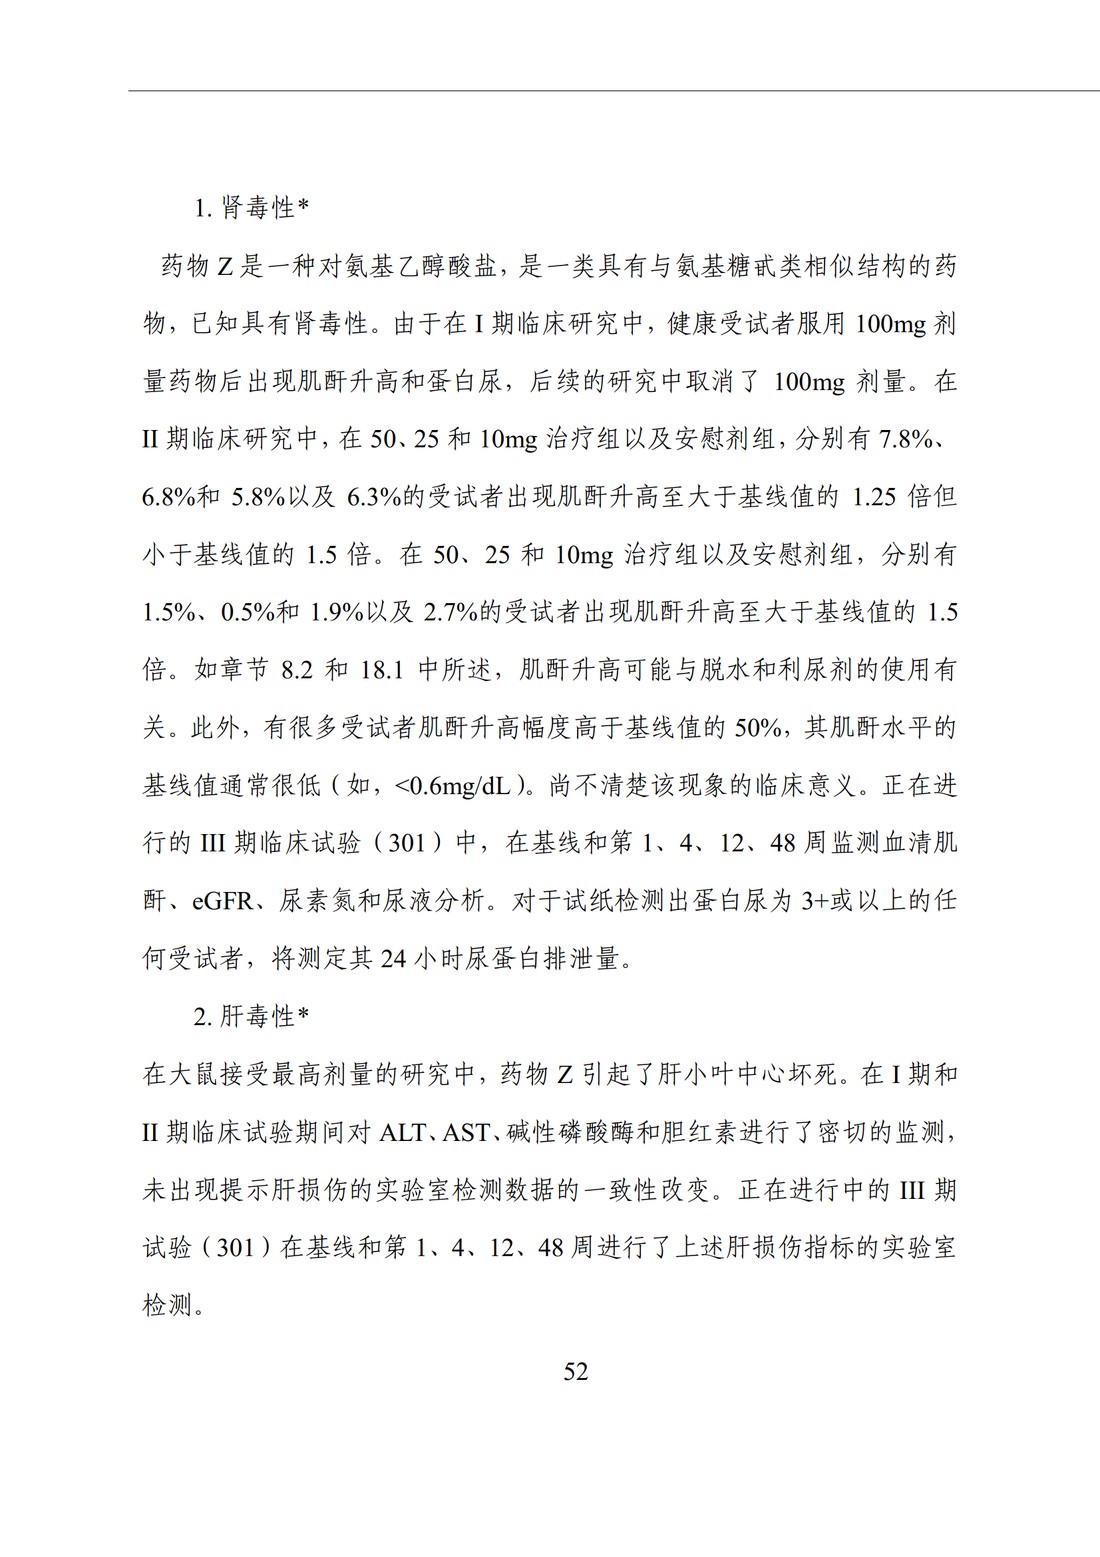 E2F 研发期间安全性更新报告(中文翻译公开征求意见稿)_57.jpg